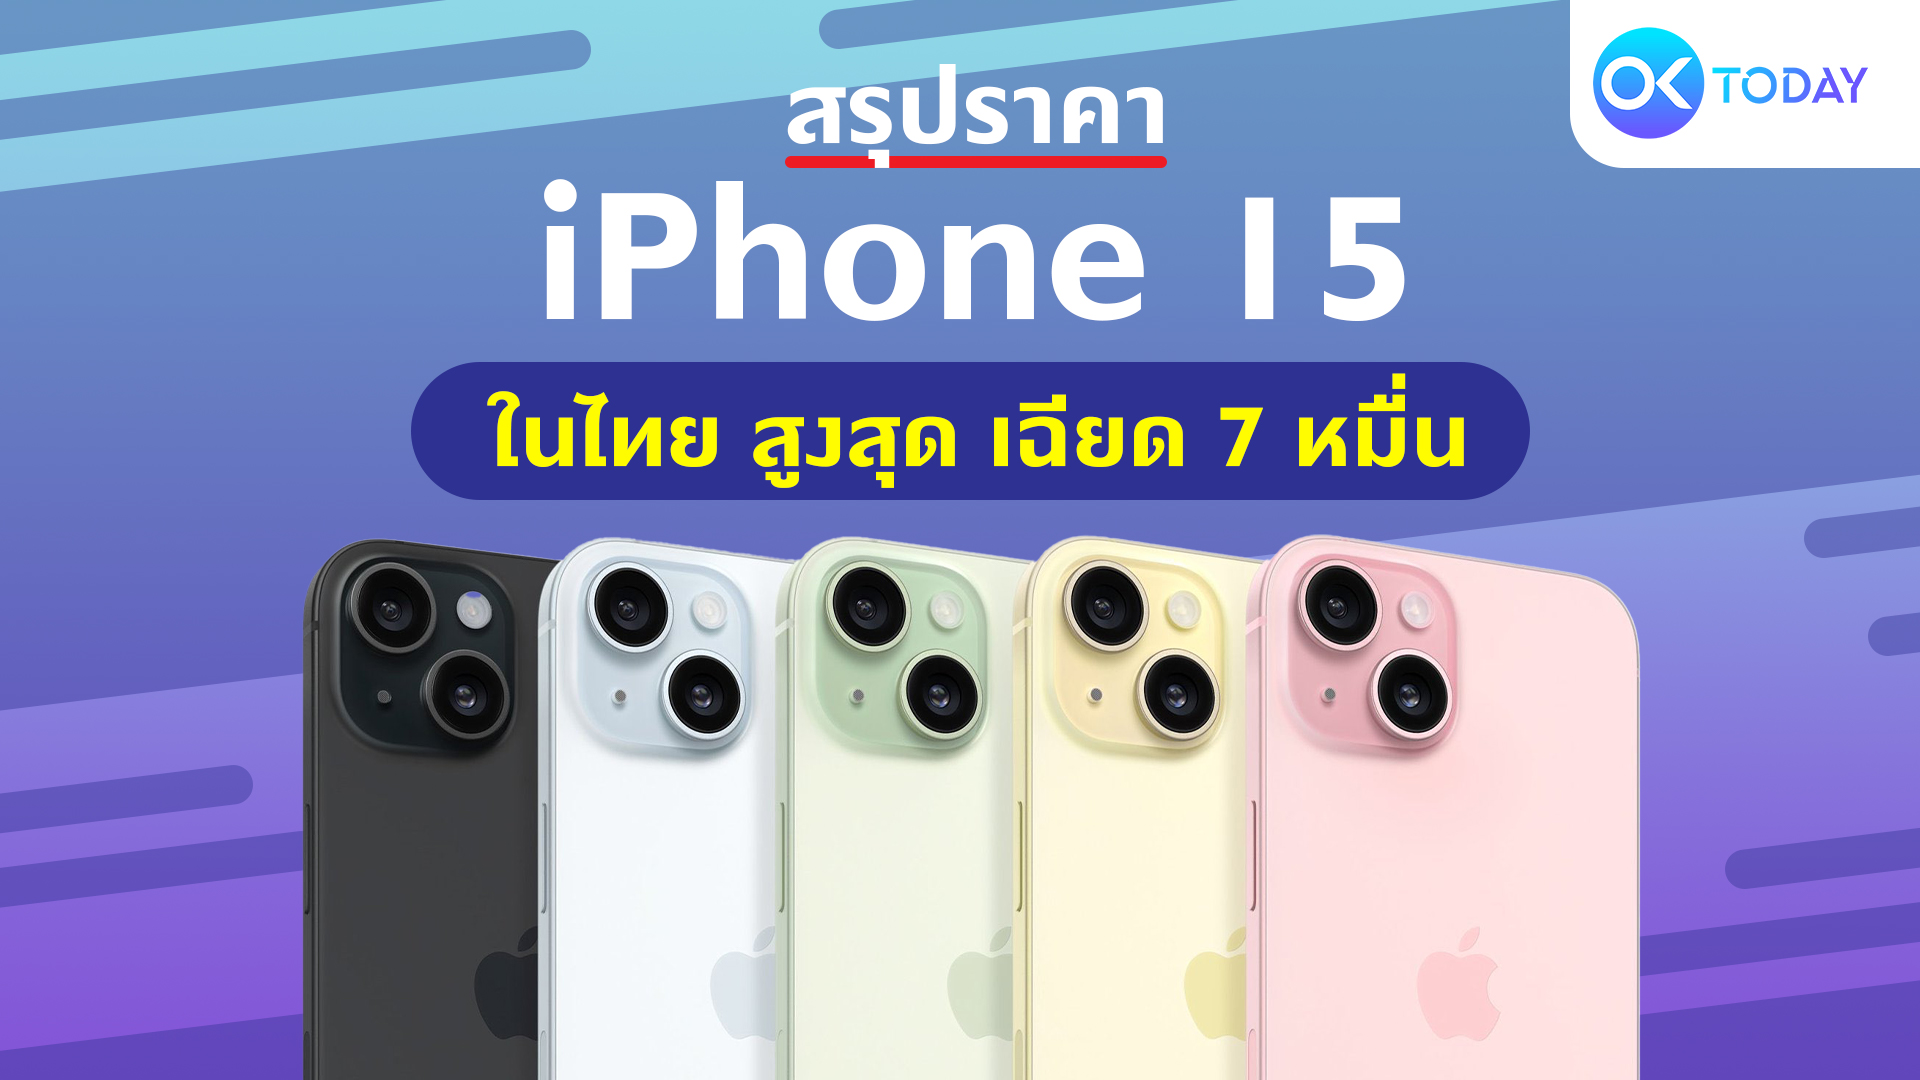 สรุปราคา iPhone 15 ในไทย สูงสุด เฉียด 7 หมื่น